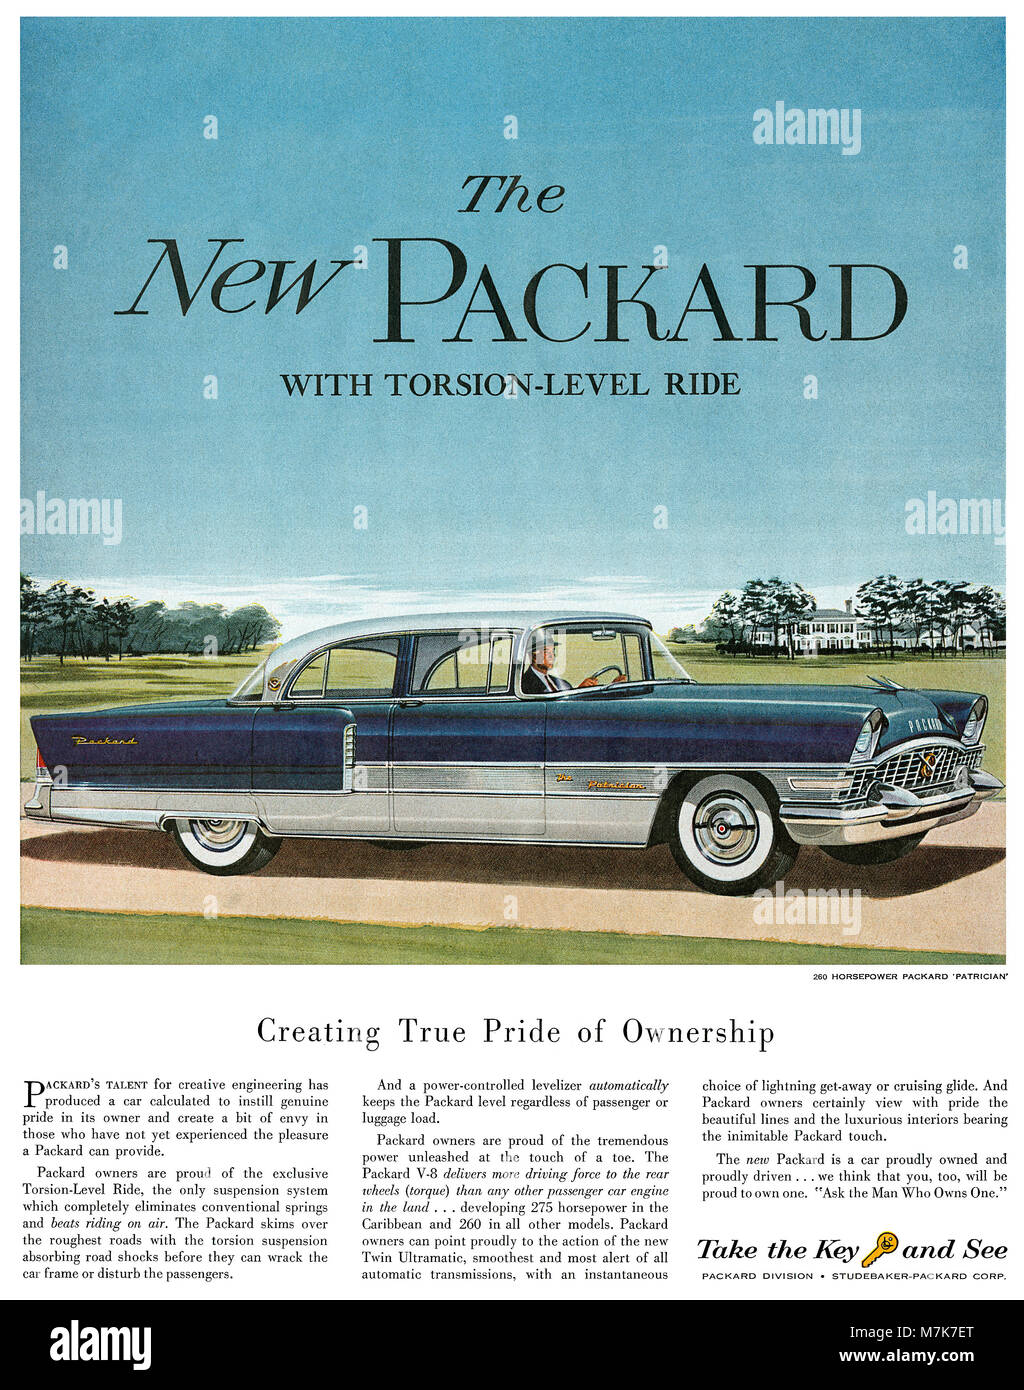 1955 U.S. pubblicità per automobili Packard, mostrando il patrizio Packard. Foto Stock